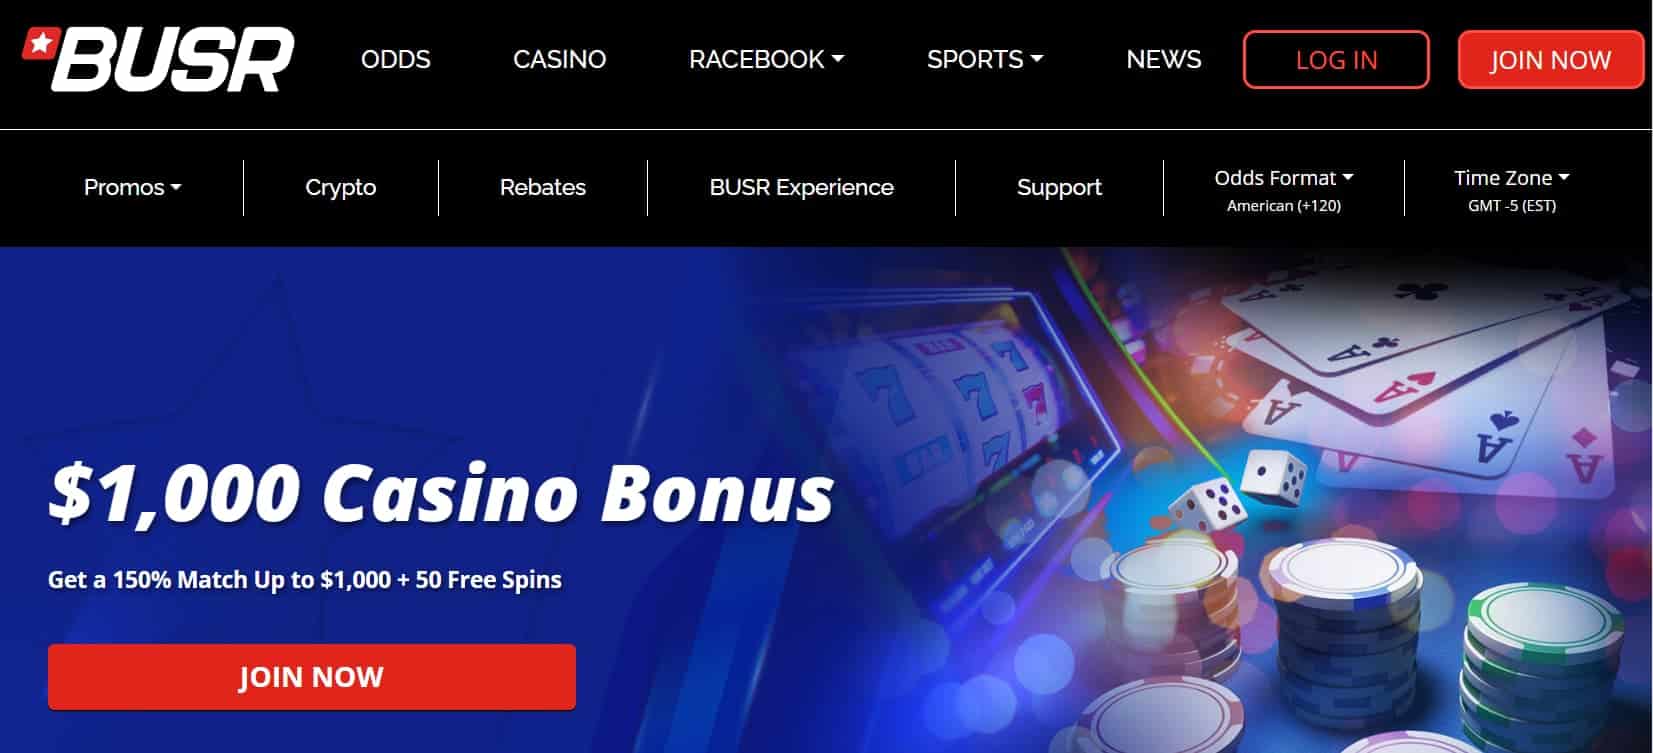 offshore gambling partners busr casino welcome bonus offer